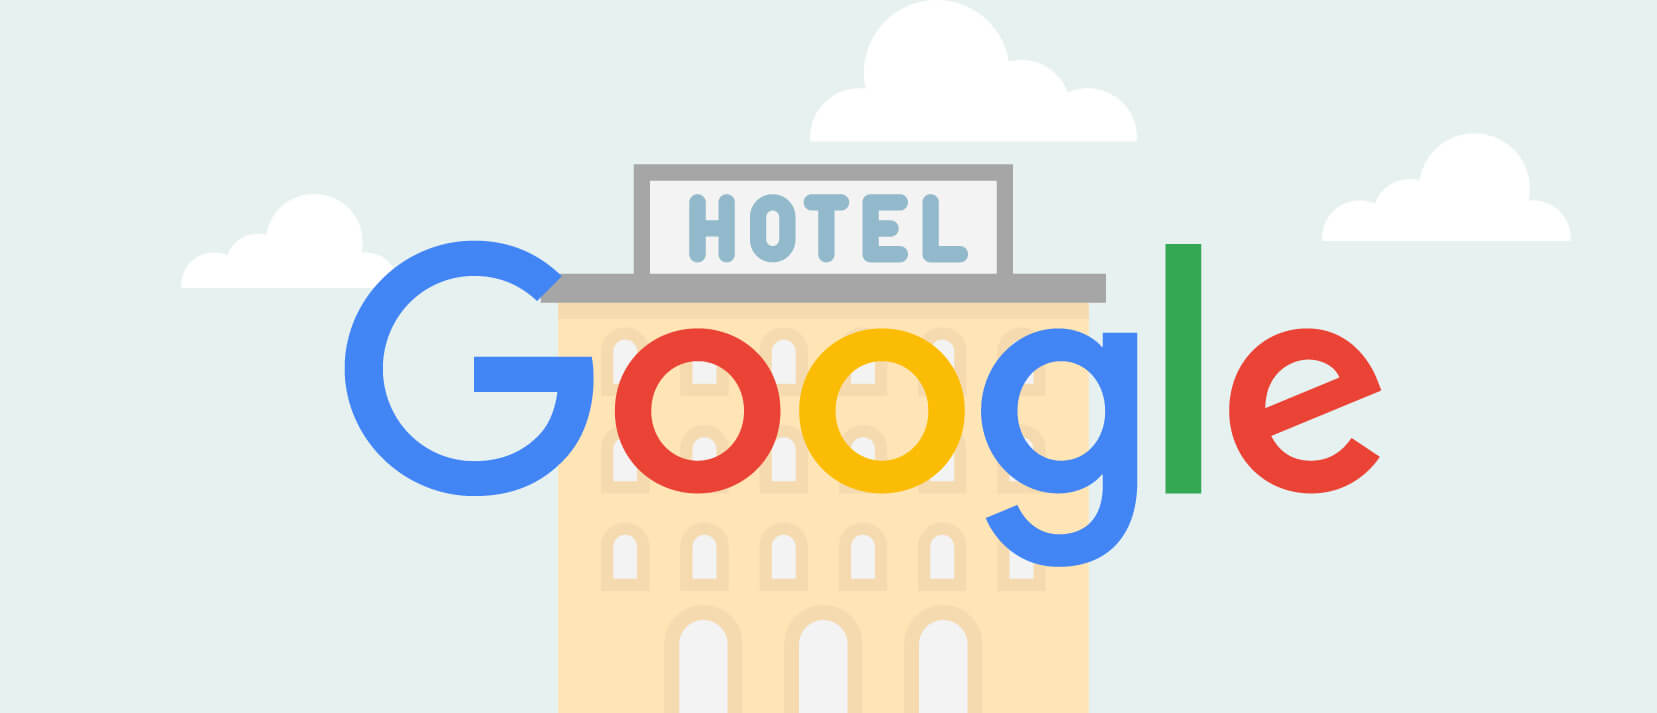 online novinky google hotely